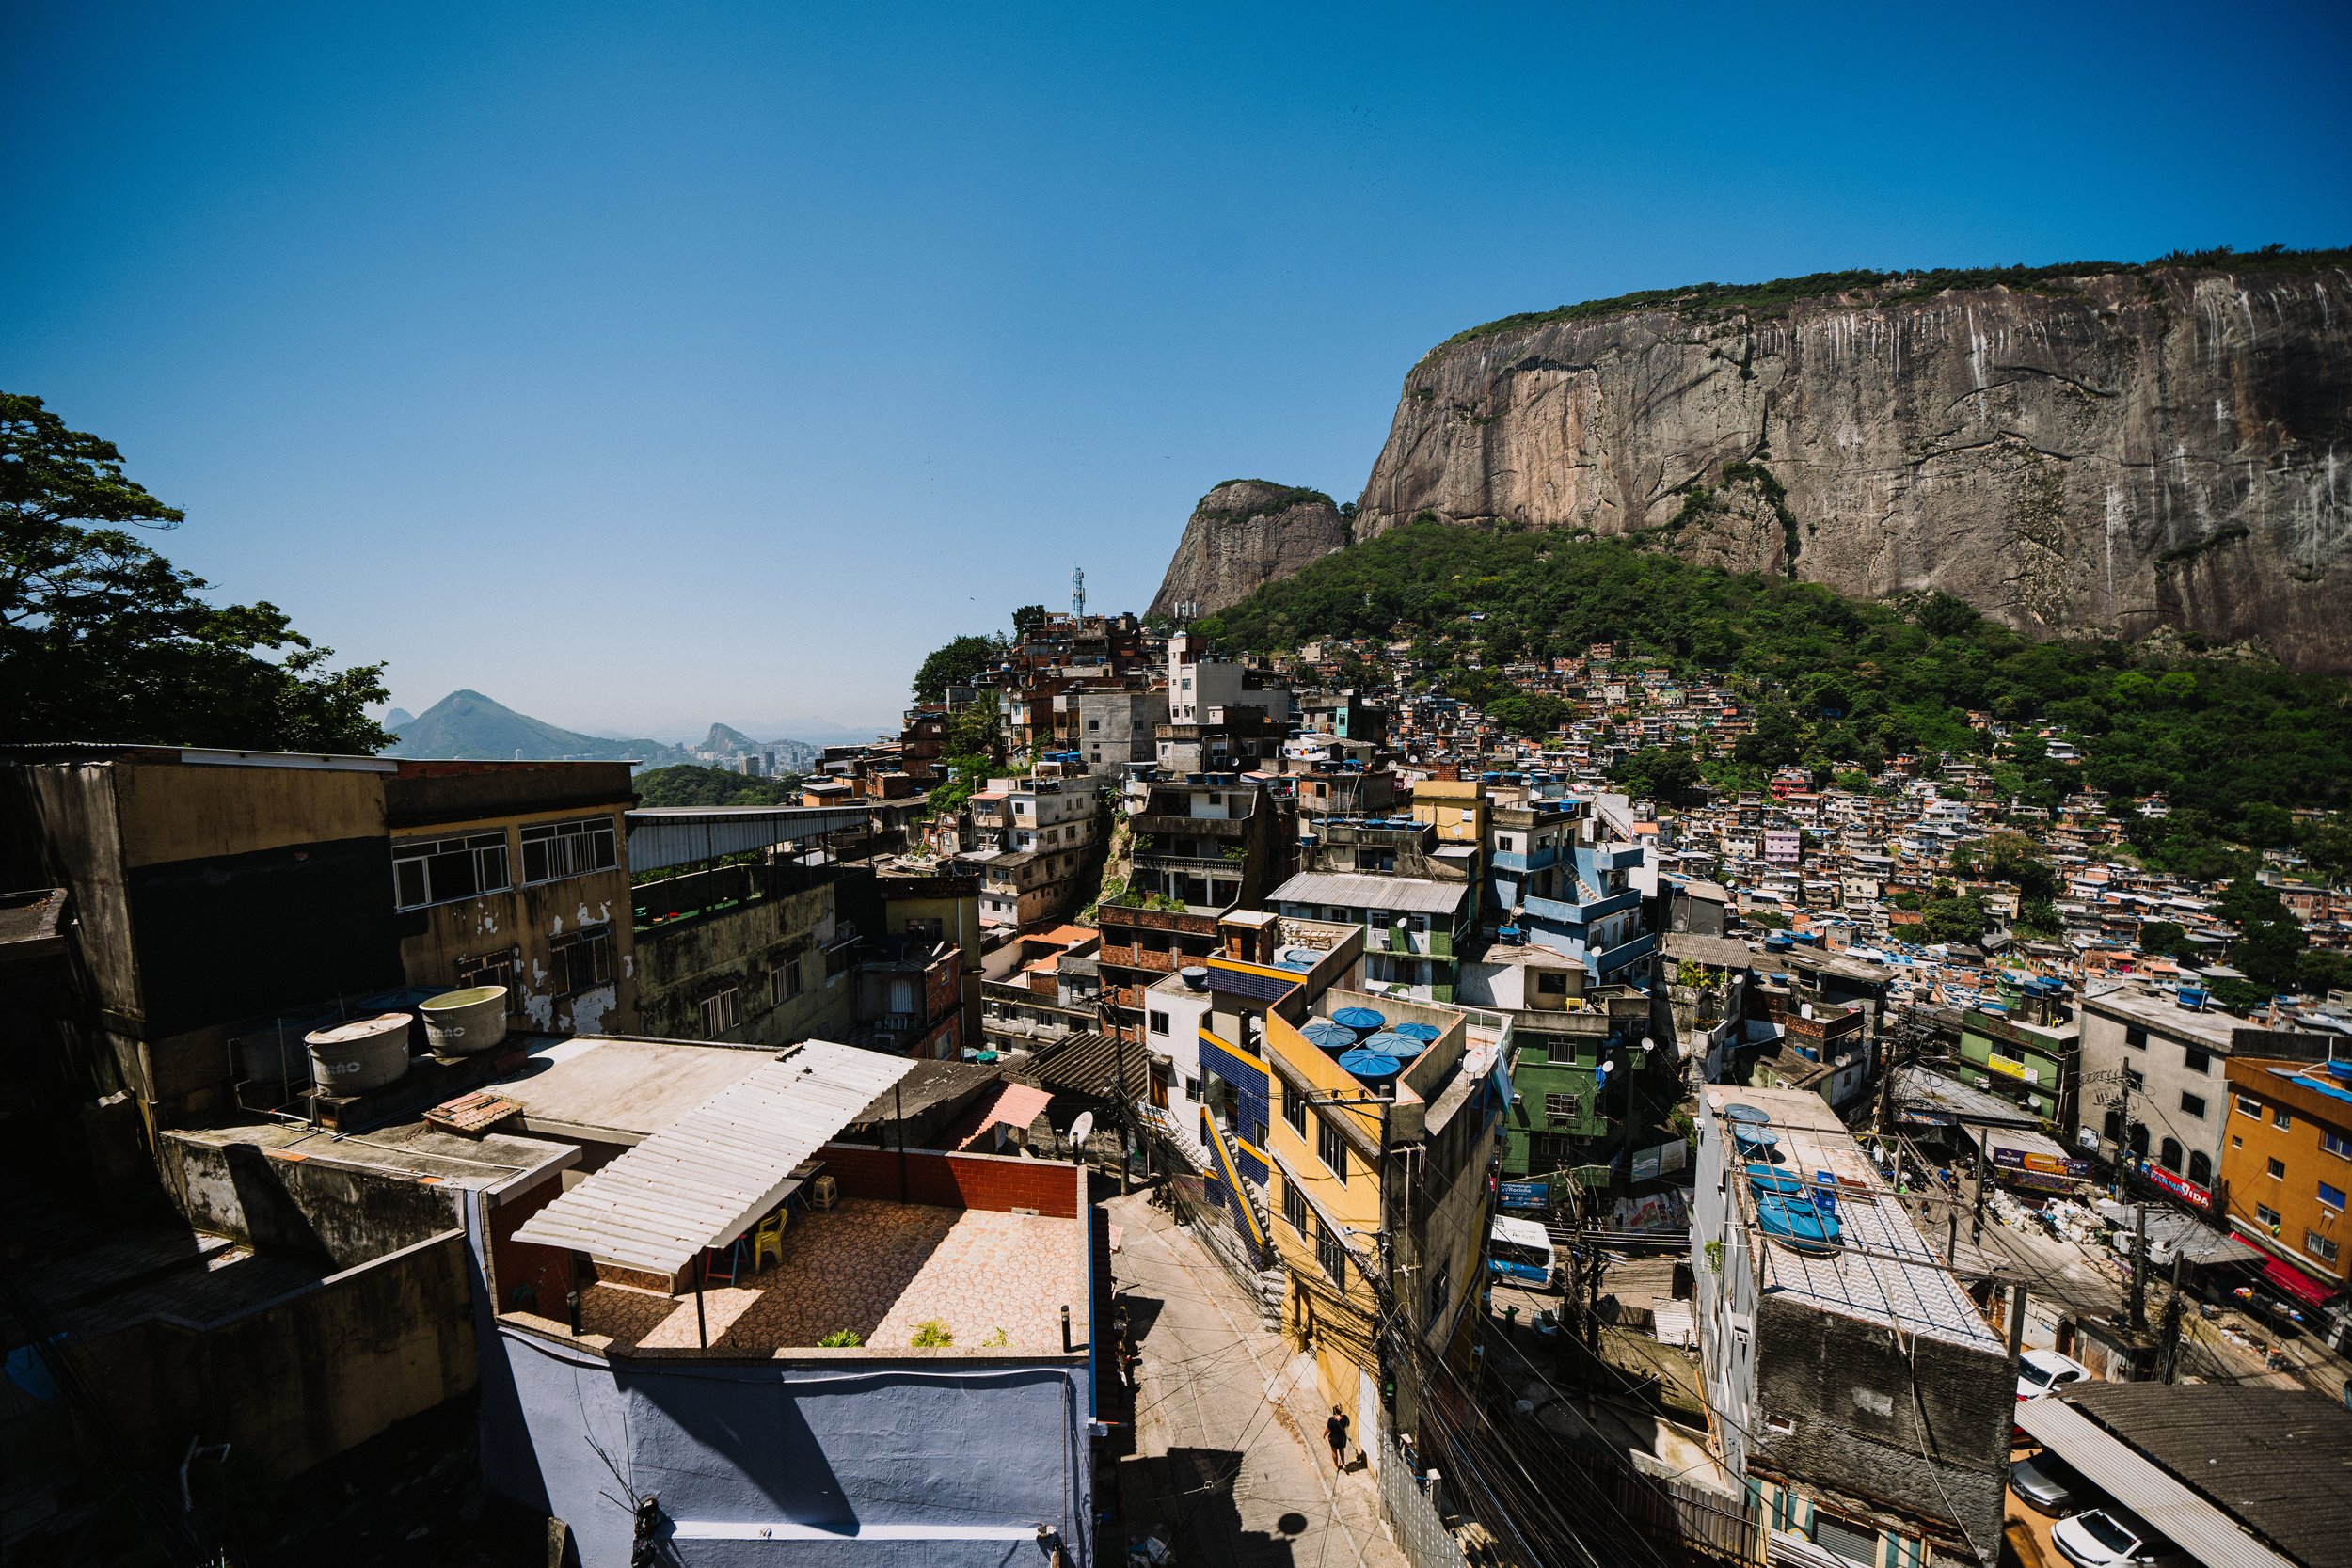 favela-da-rocinha-rio-de-janeiro-guia-turistico-para-favela-ricardo-franzen-producao-de-filme-documentario-educacao-na-favela-rio-de-janeiro-rocinha-8.jpg